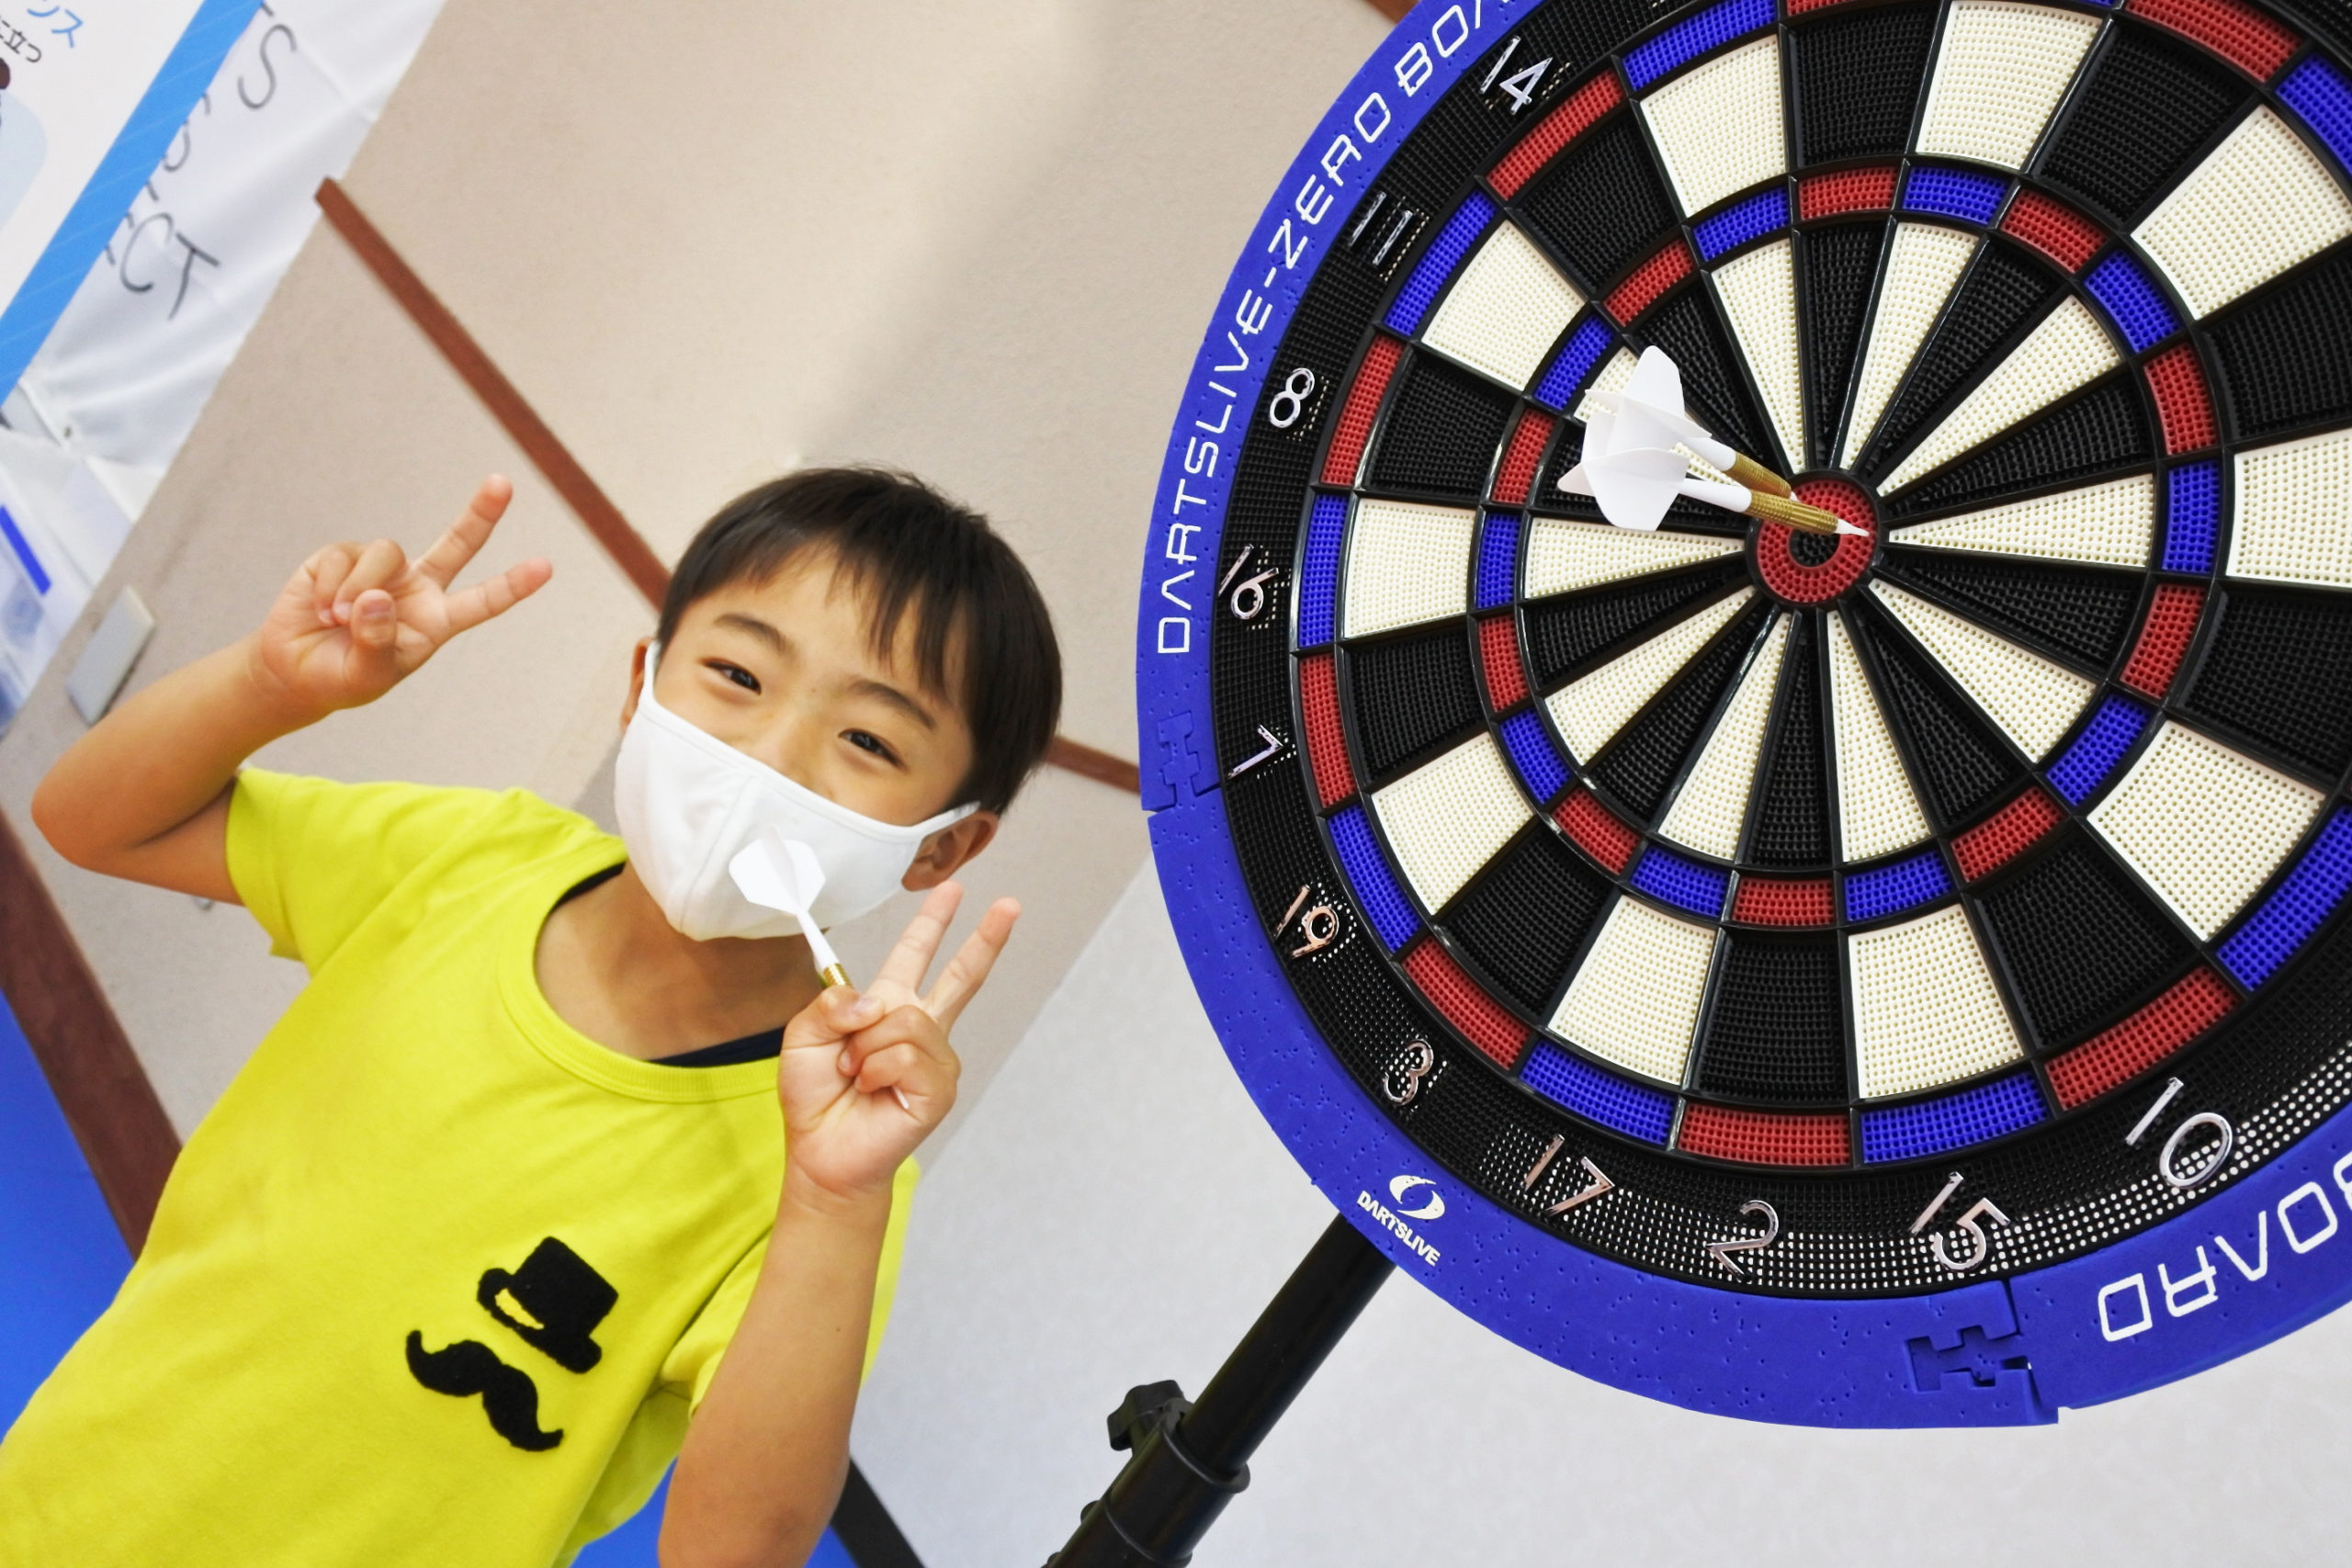 世界で活躍する日本人選手がその競技を始めた年齢は スポーツダーツプロジェクト Sports Darts Project